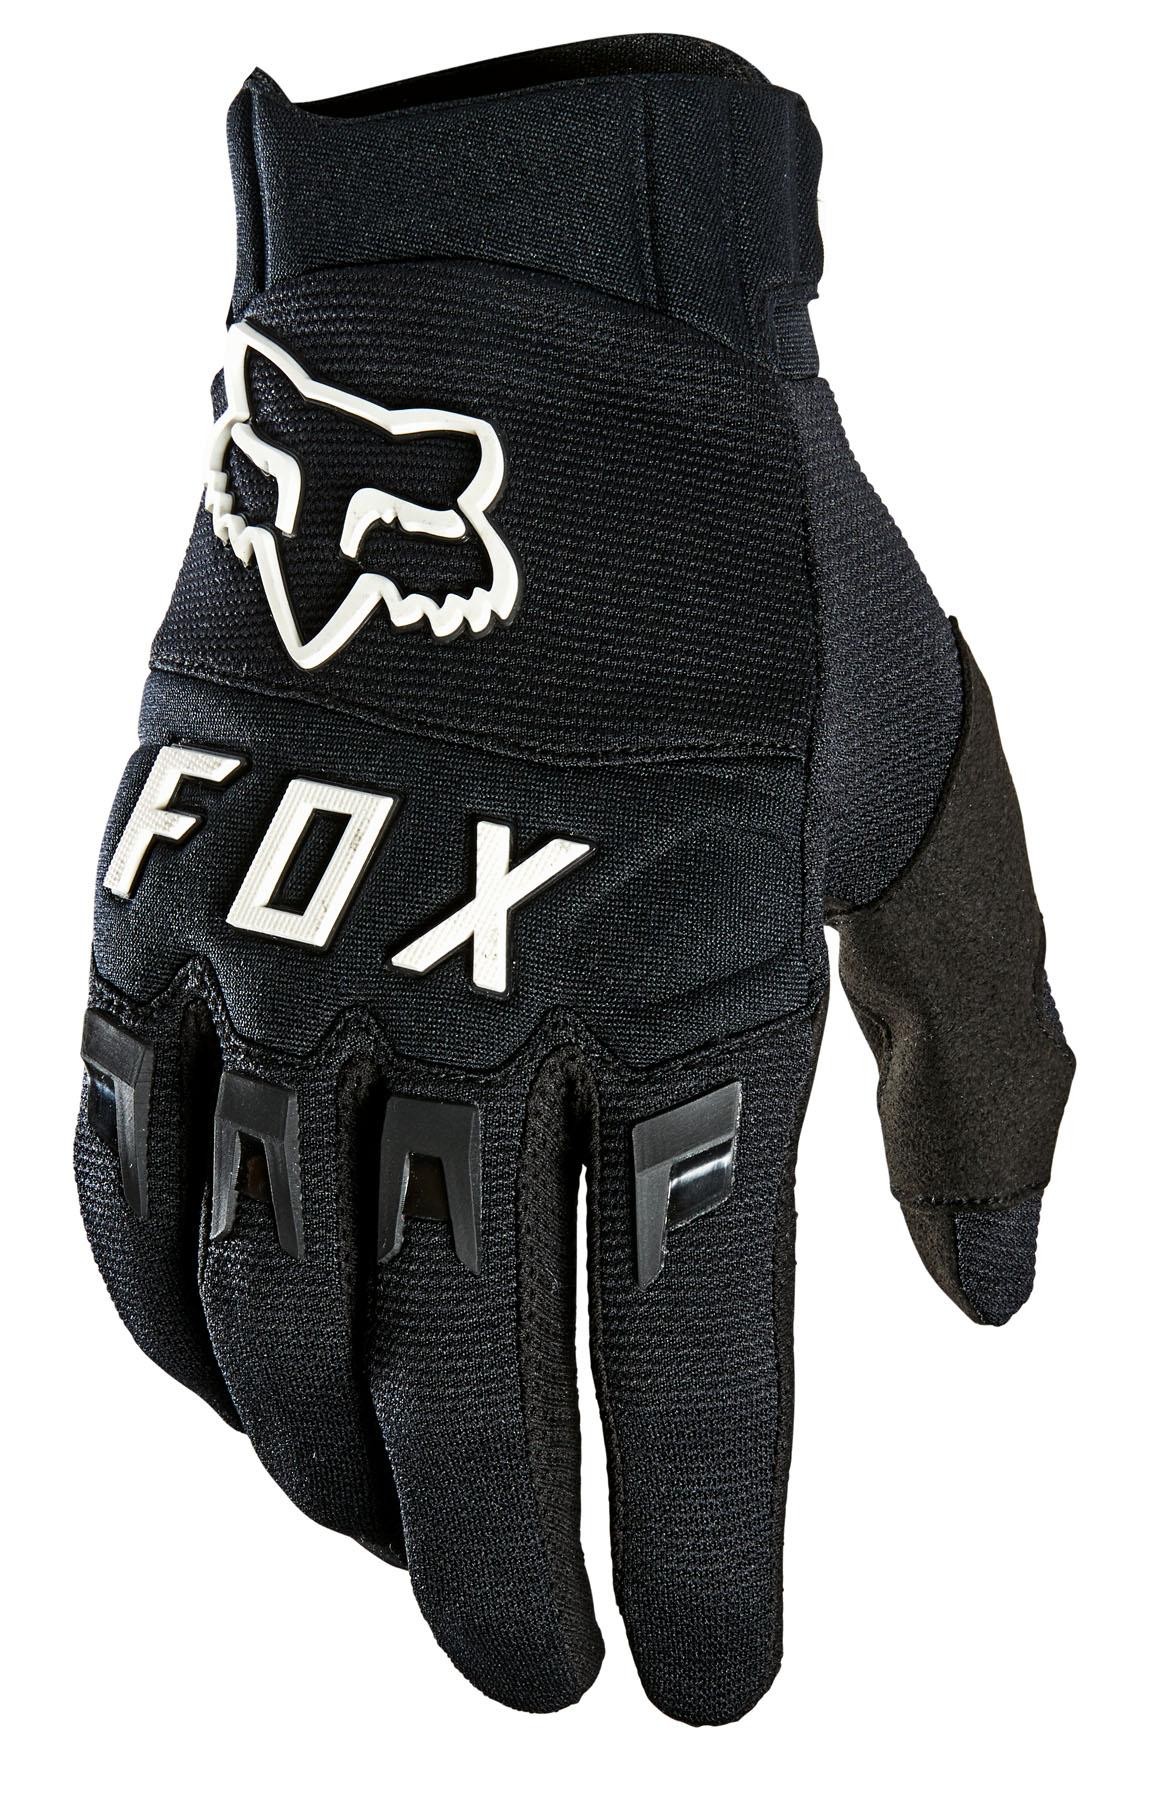 Logo Handschuhe Fox Glove / Dirtpaw schwarz